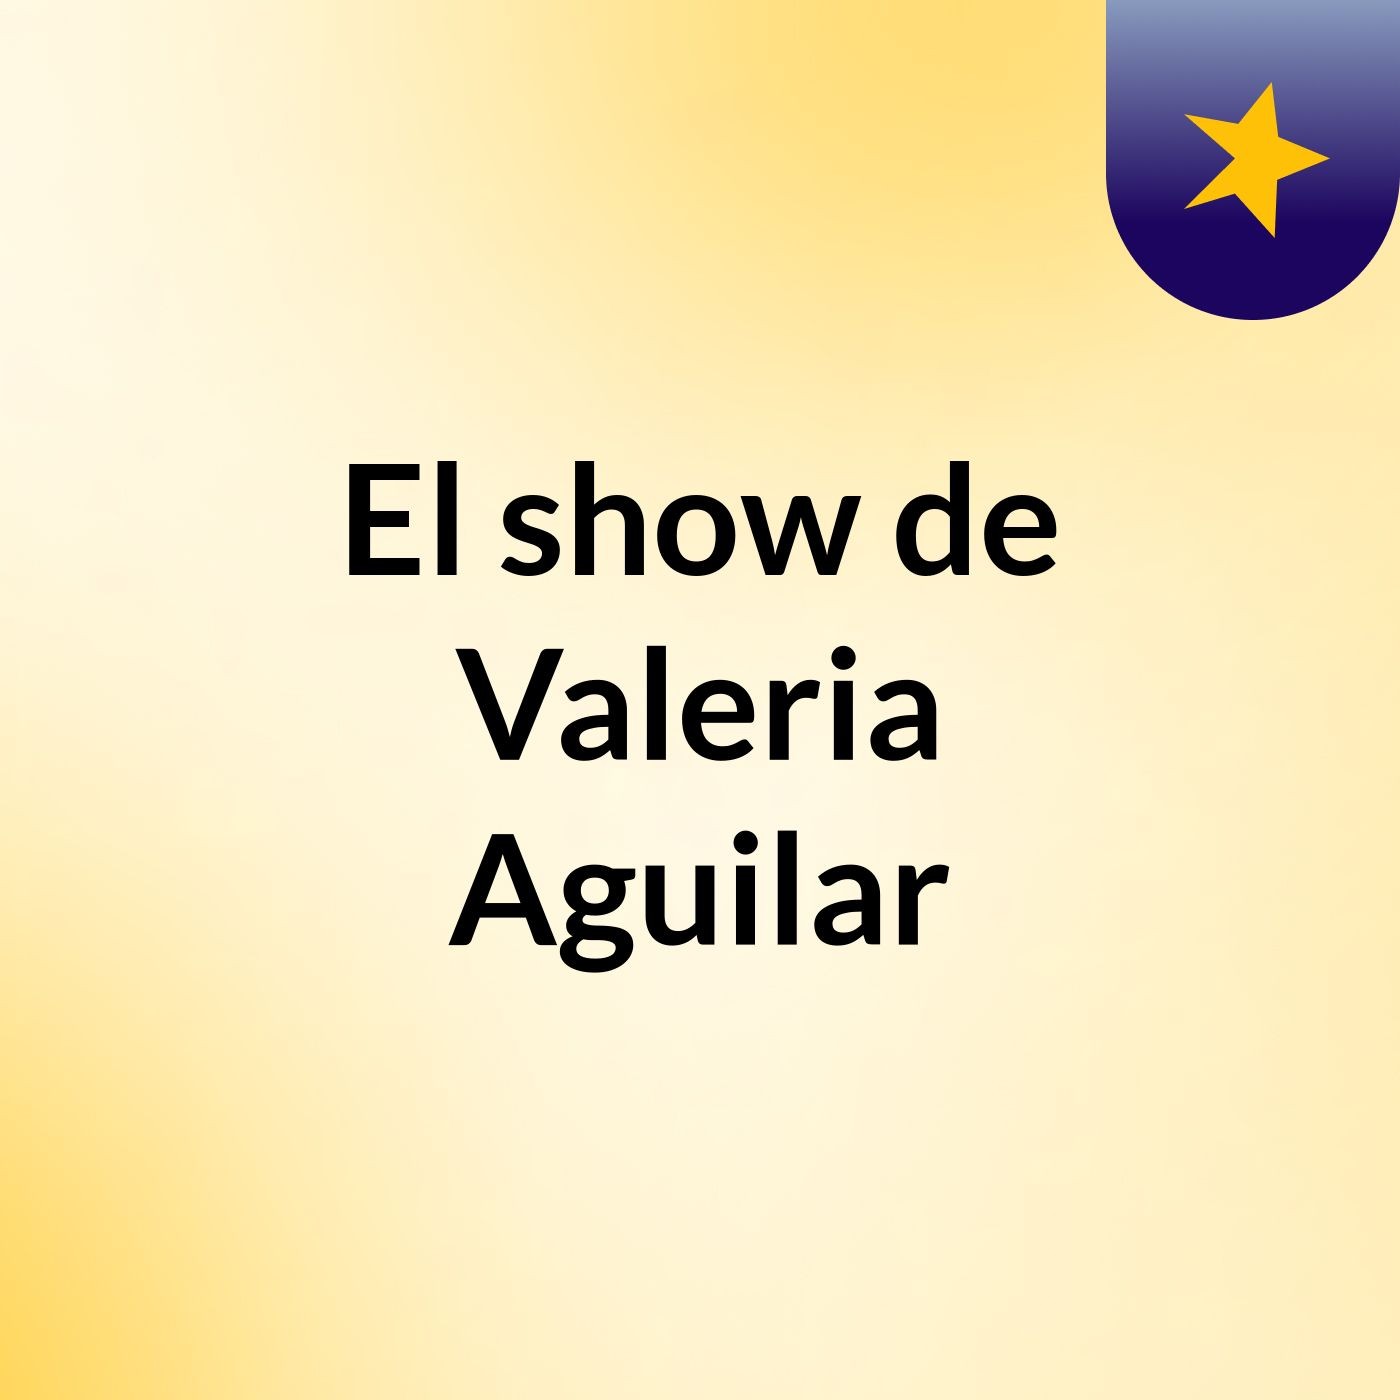 El show de Valeria Aguilar